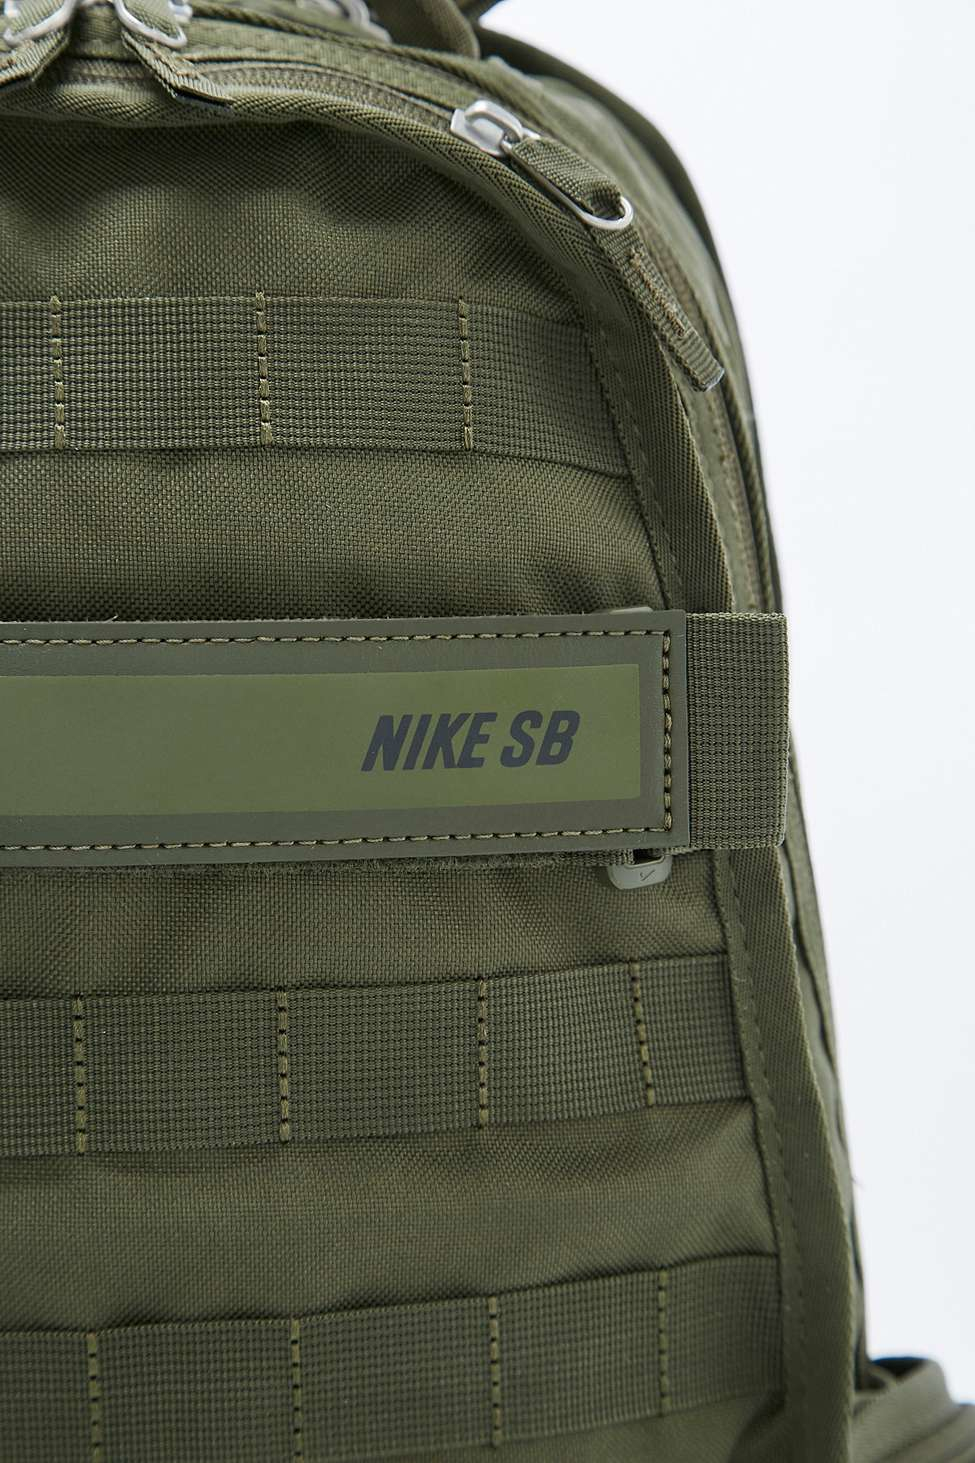 Nike Sb Backpack Green Cheap Online